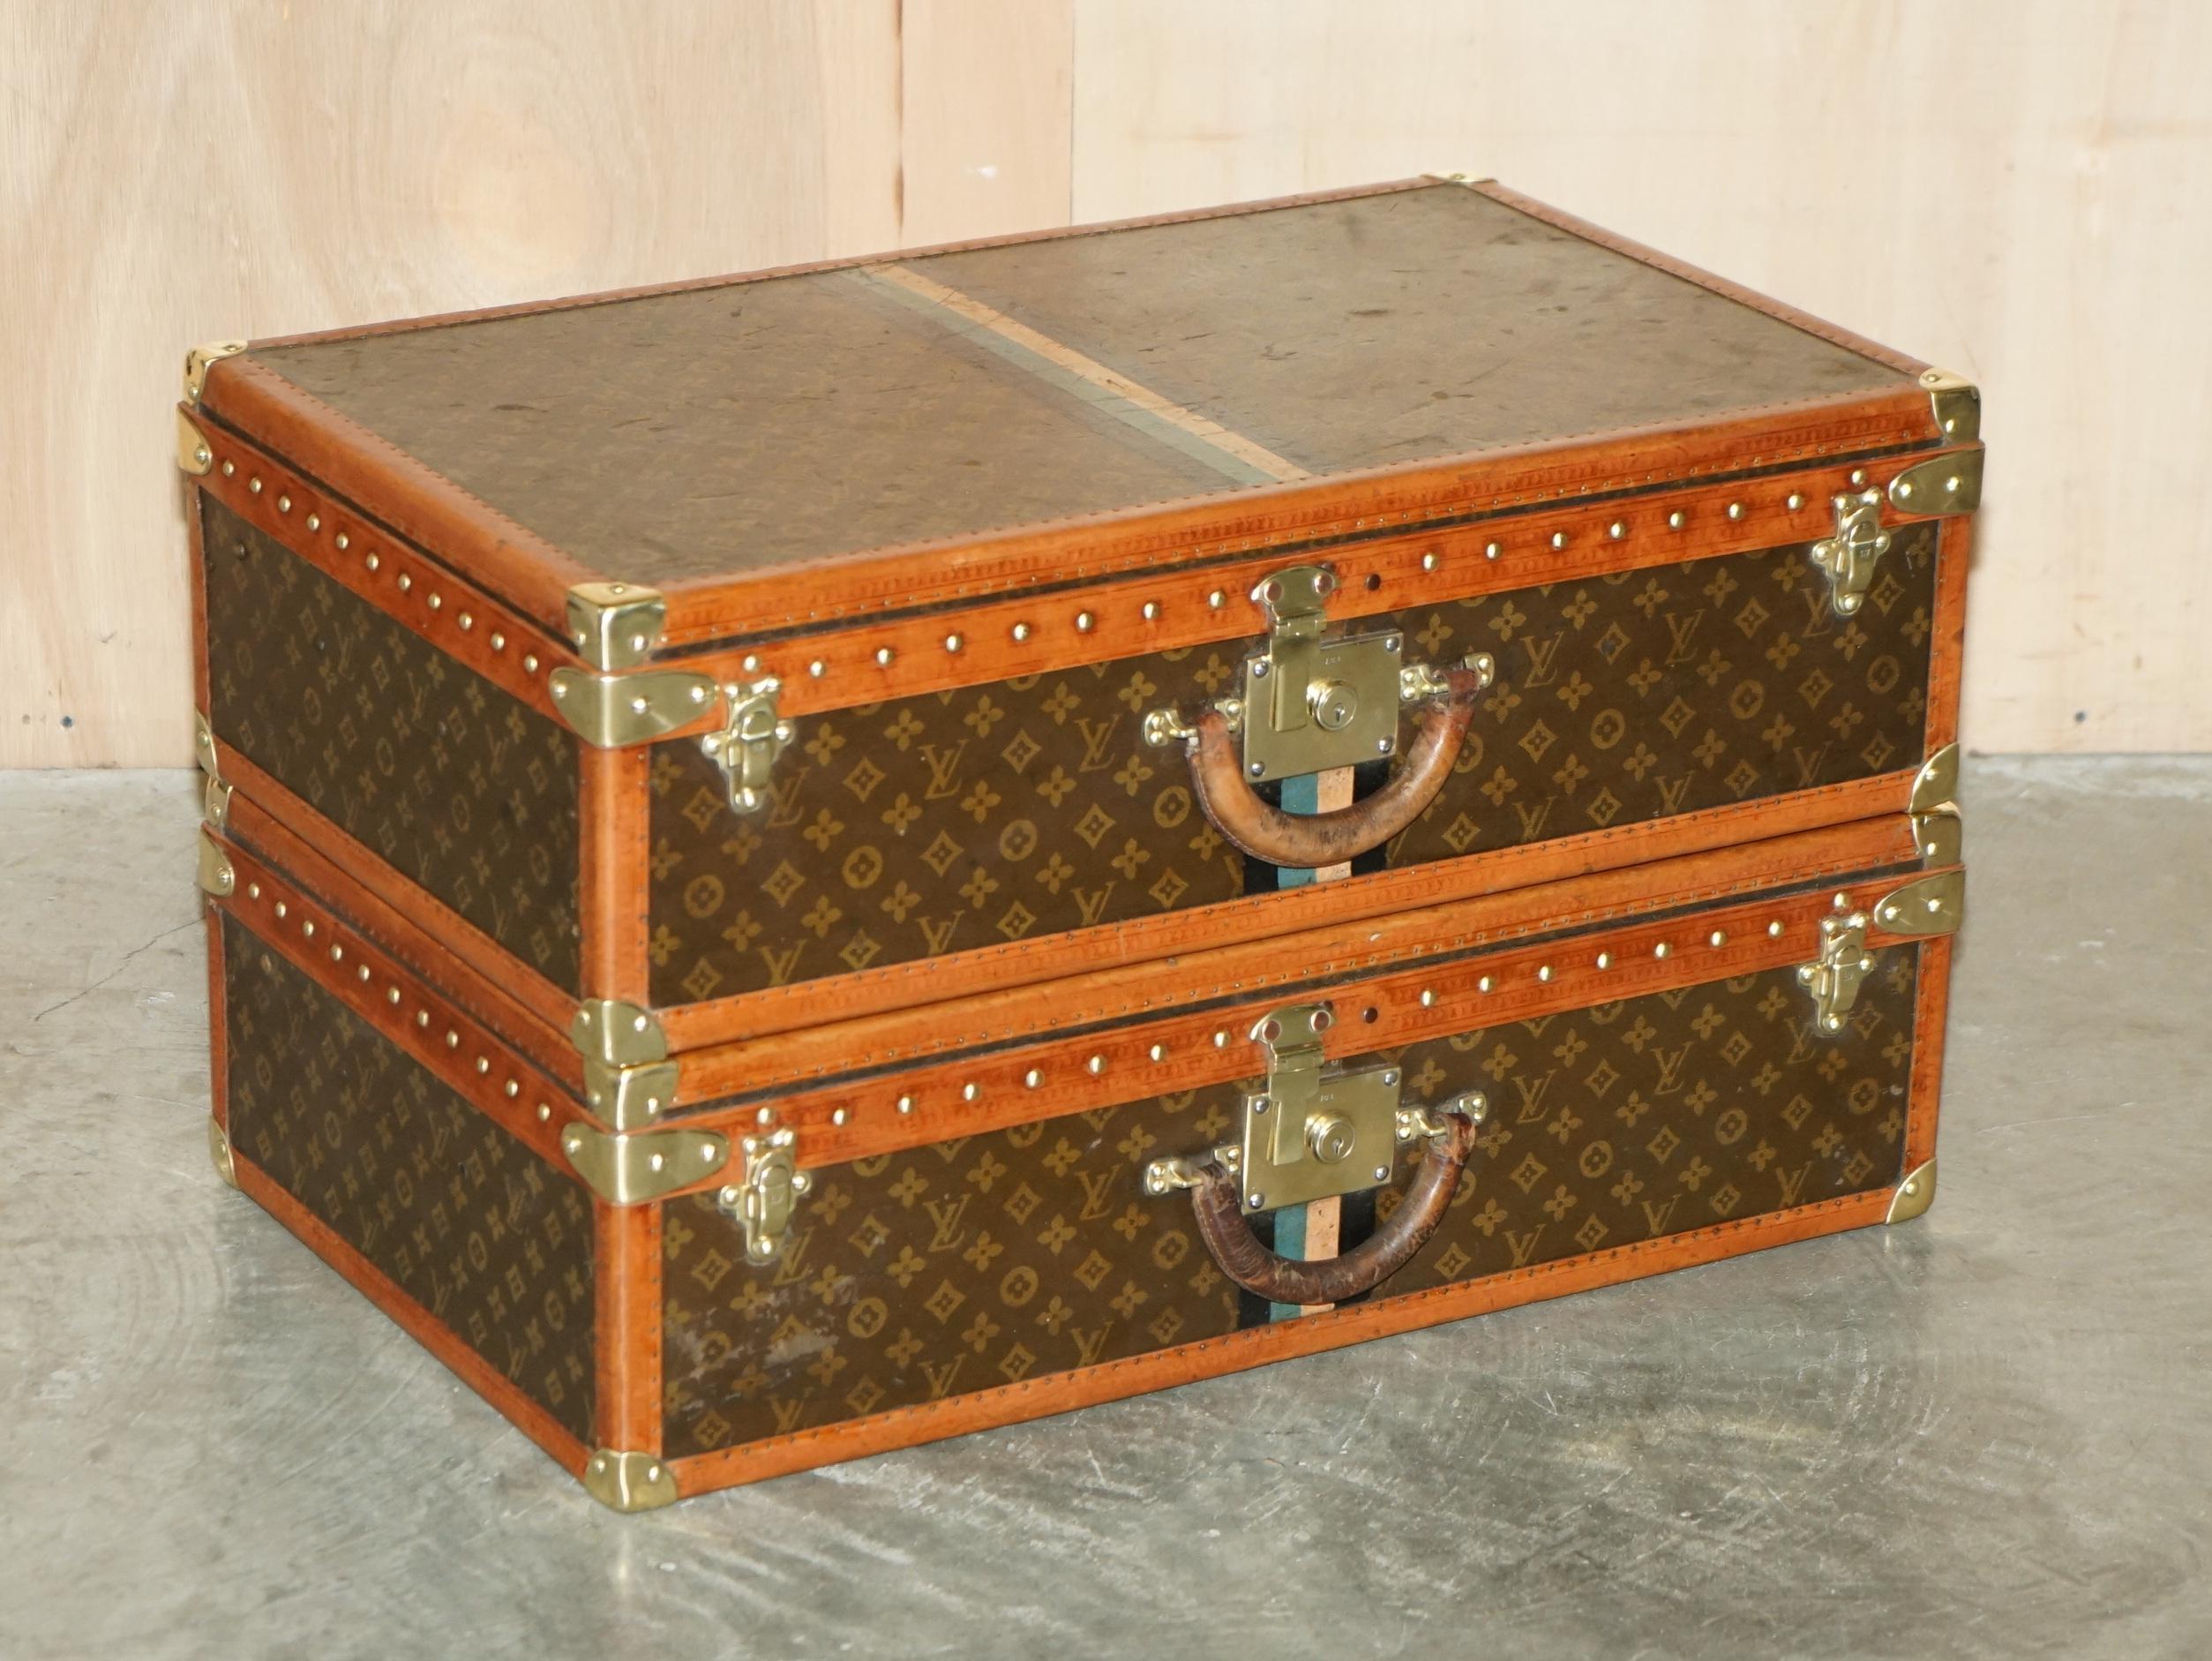 Royal House Antiques

The House Antiques a le plaisir d'offrir à la vente cette paire absolument magnifique de valises Monogram de Louis Vuitton, entièrement restaurées. 

Veuillez noter que les frais de livraison indiqués sont donnés à titre